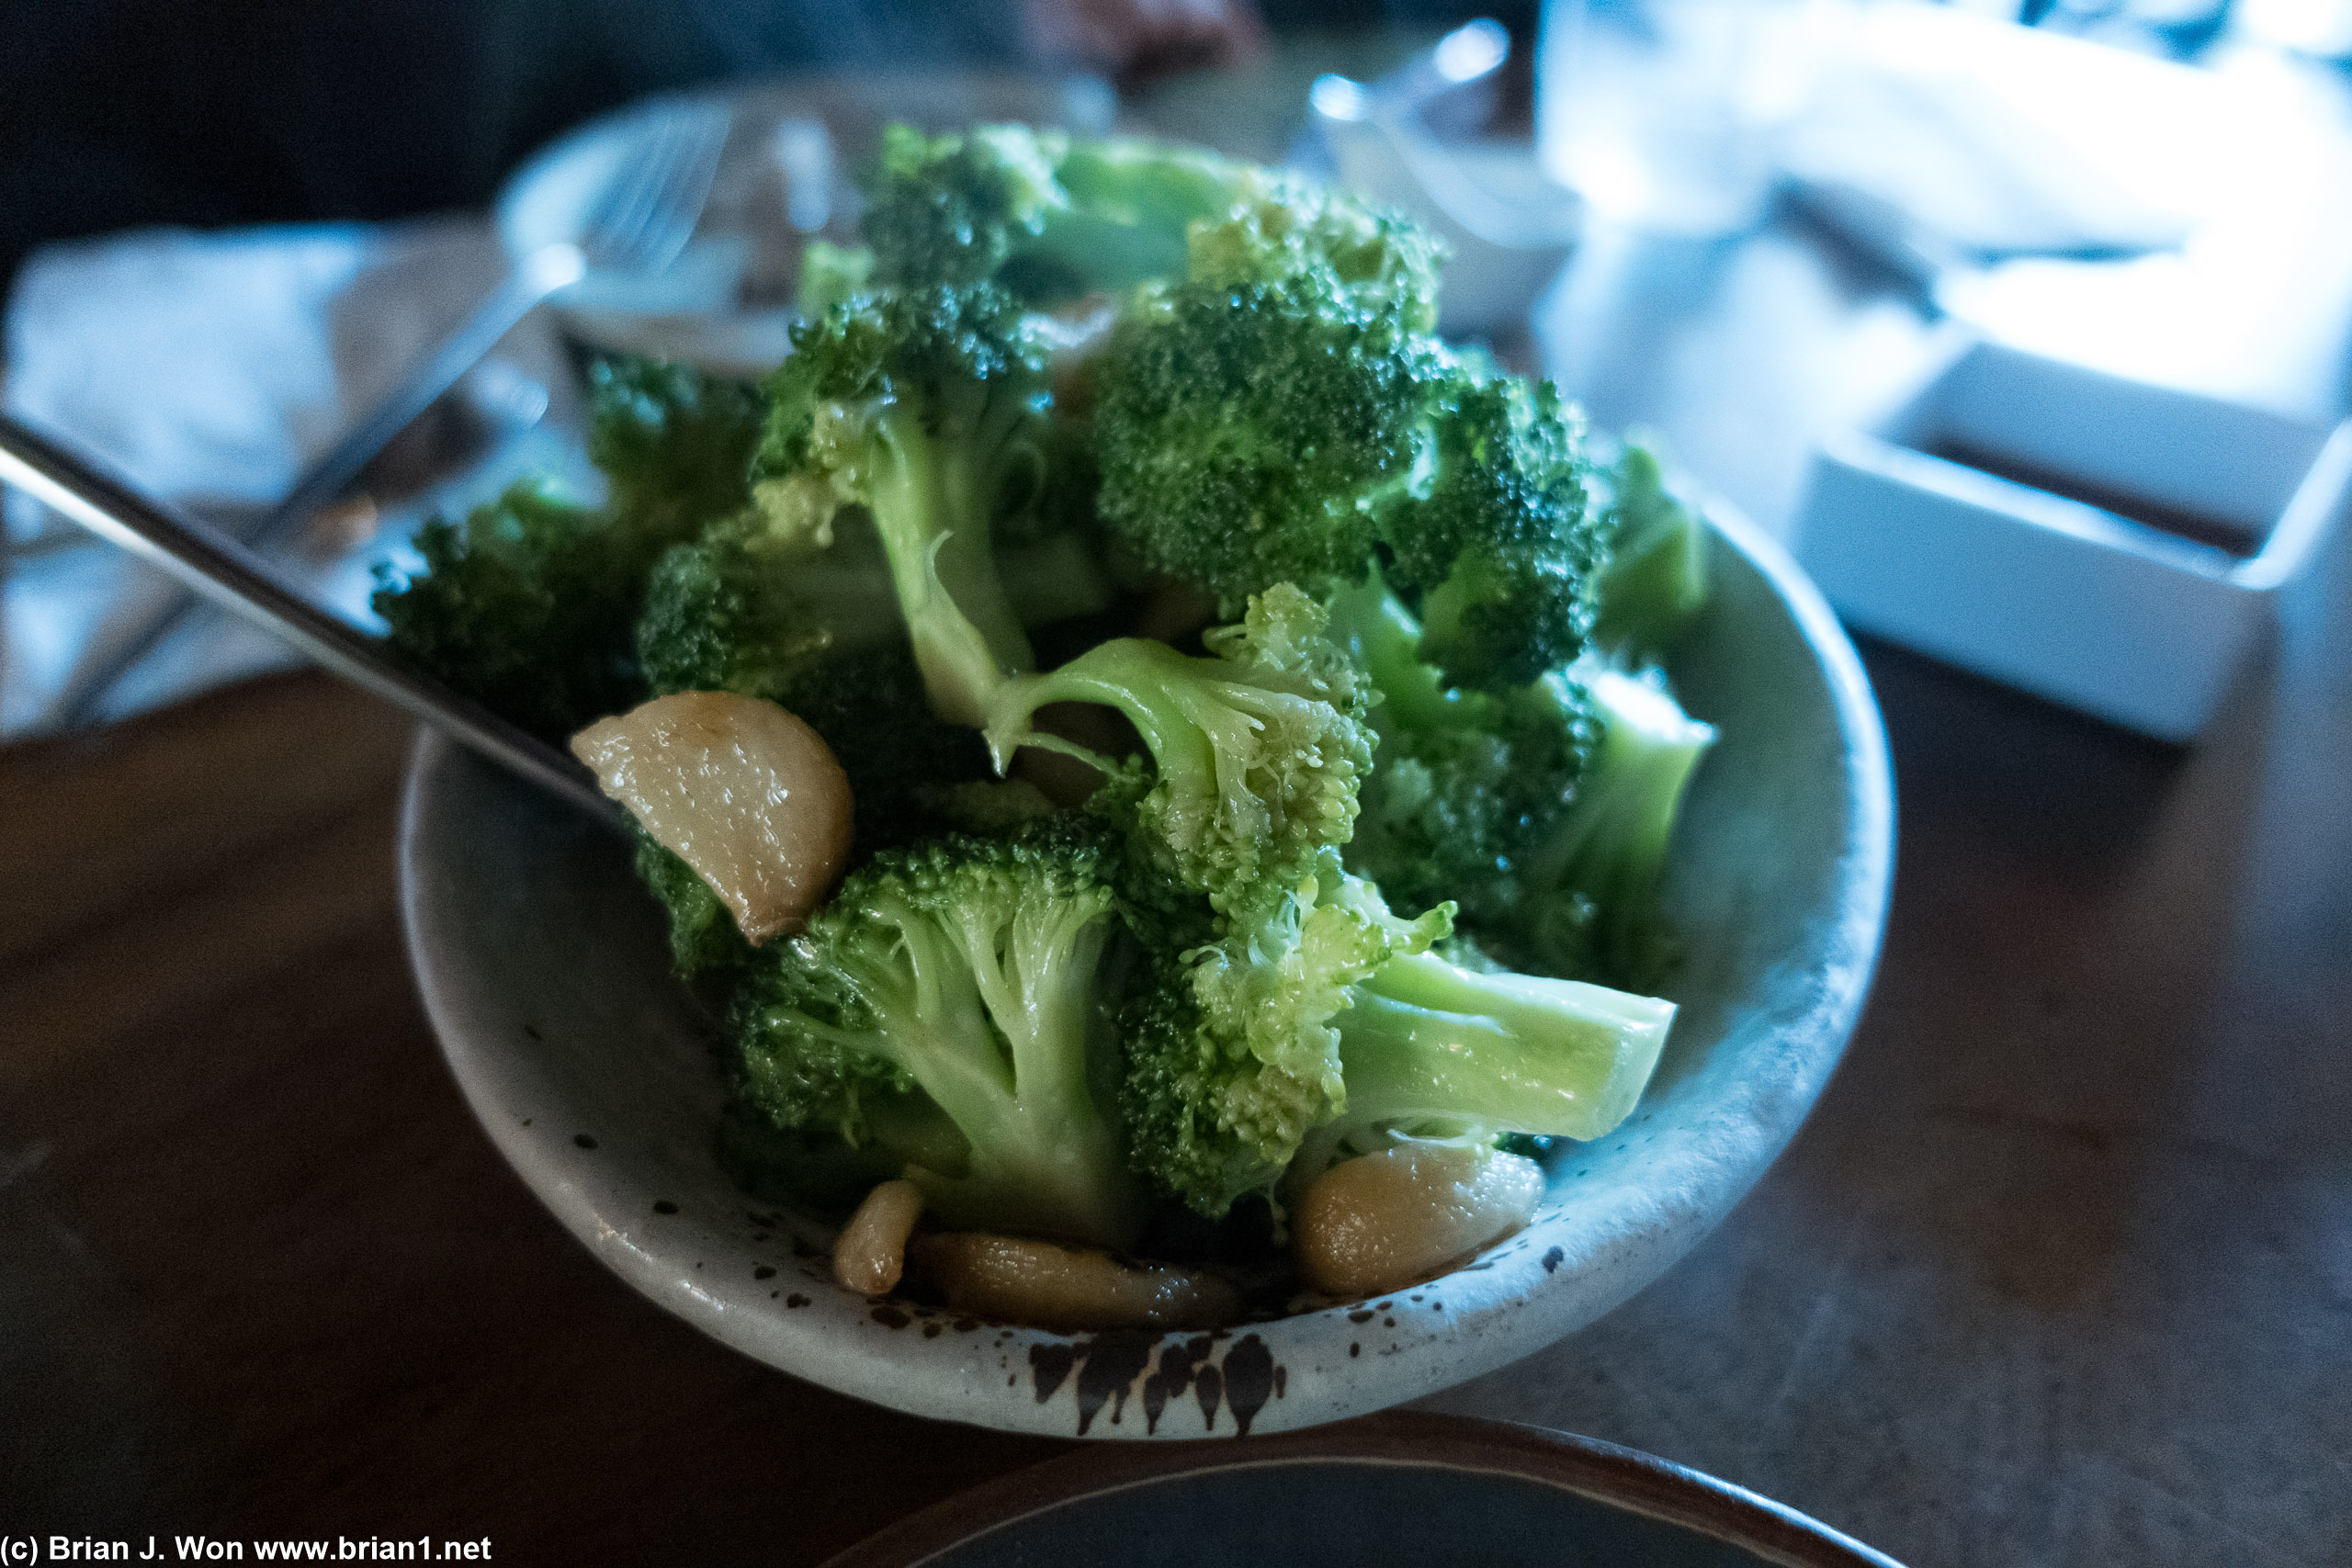 Broccoli was good.